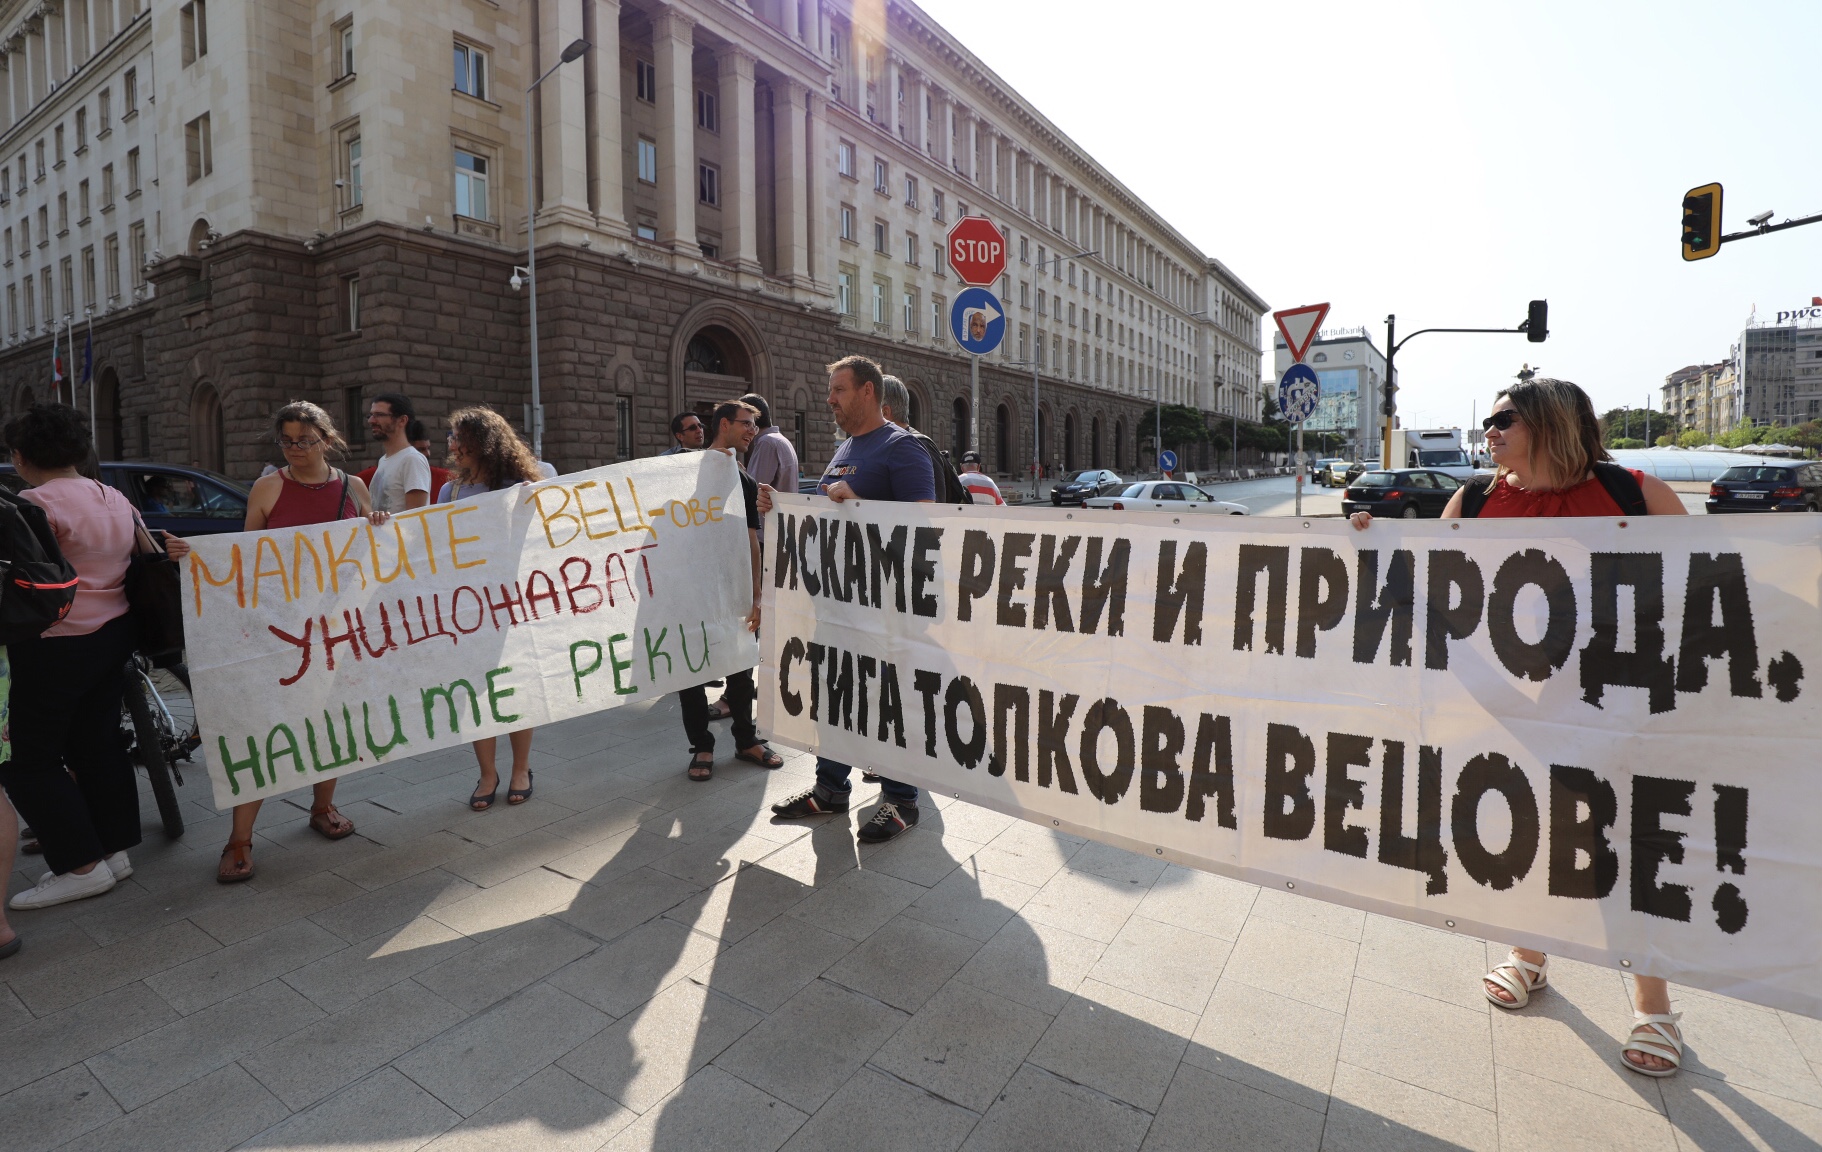 Протести на ловно-рибарски дружества и природозащитници се проведоха в няколко града на България тази вечер. Причината са предложения за промени, които според недоволните, ще позволят строеж на ВЕЦ-ове и унищожаване на околната среда.